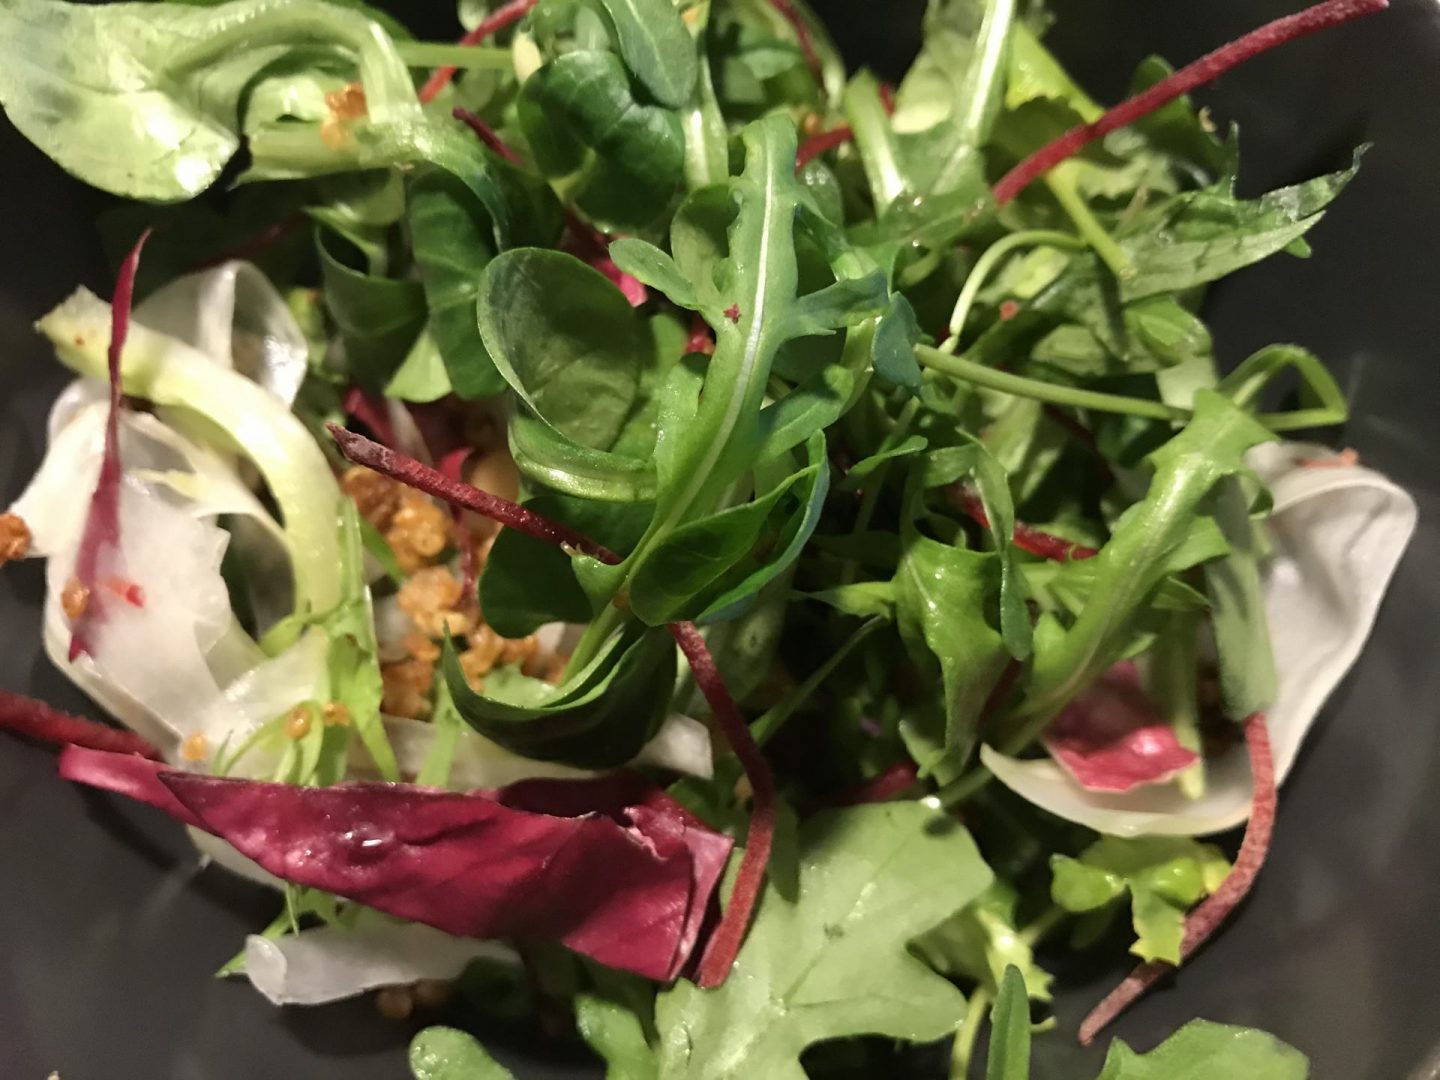 Erfahrung Bewertung Kritik Pastabar Caruso Köln Take away Salat Foodblog Sternestulle